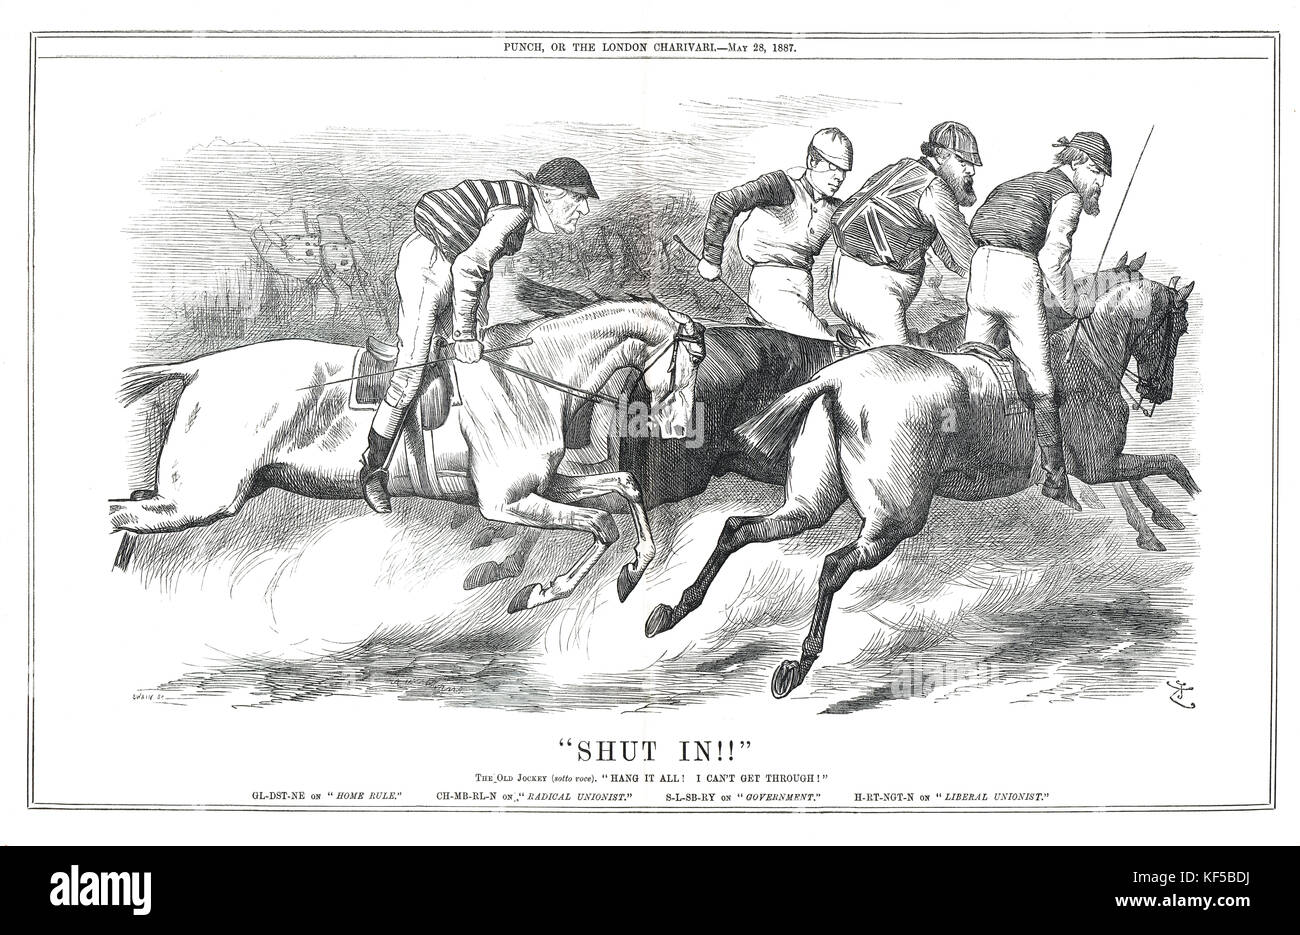 Gladstone sur Home Rule, enfermé. 1887 caricature de punch analogie avec les courses de chevaux montrant les politiciens comme des jockeys faisant référence à la fuite du parti libéral de 1886. Banque D'Images